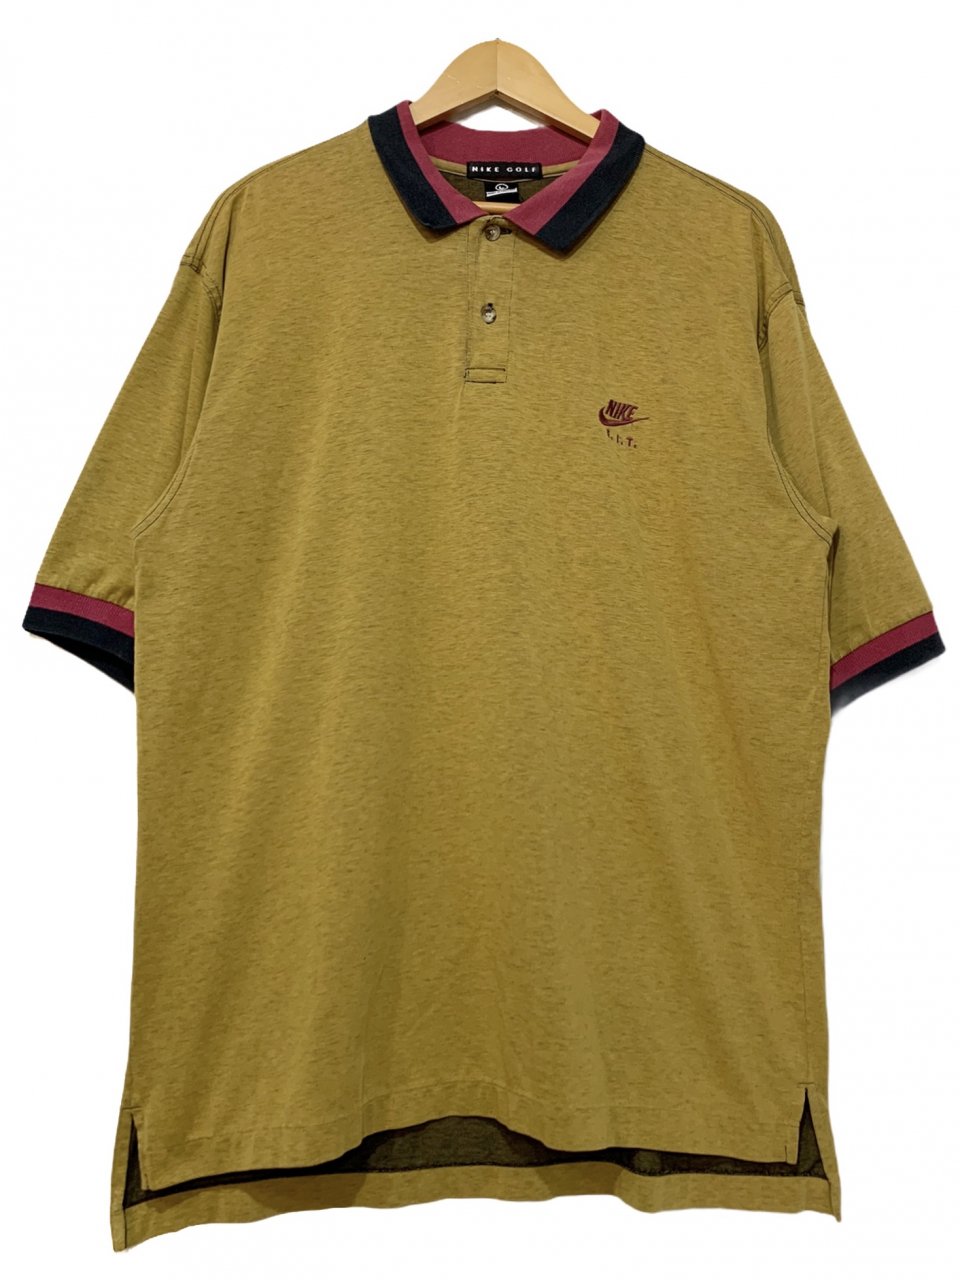 93年製 NIKE GOLF Logo S/S Polo Shirt 黄 L 90s ナイキ ゴルフ 半袖 ポロシャツ ワンポイント ロゴ 刺繍  マスタードイエロー 古着 - NEWJOKE ONLINE STORE